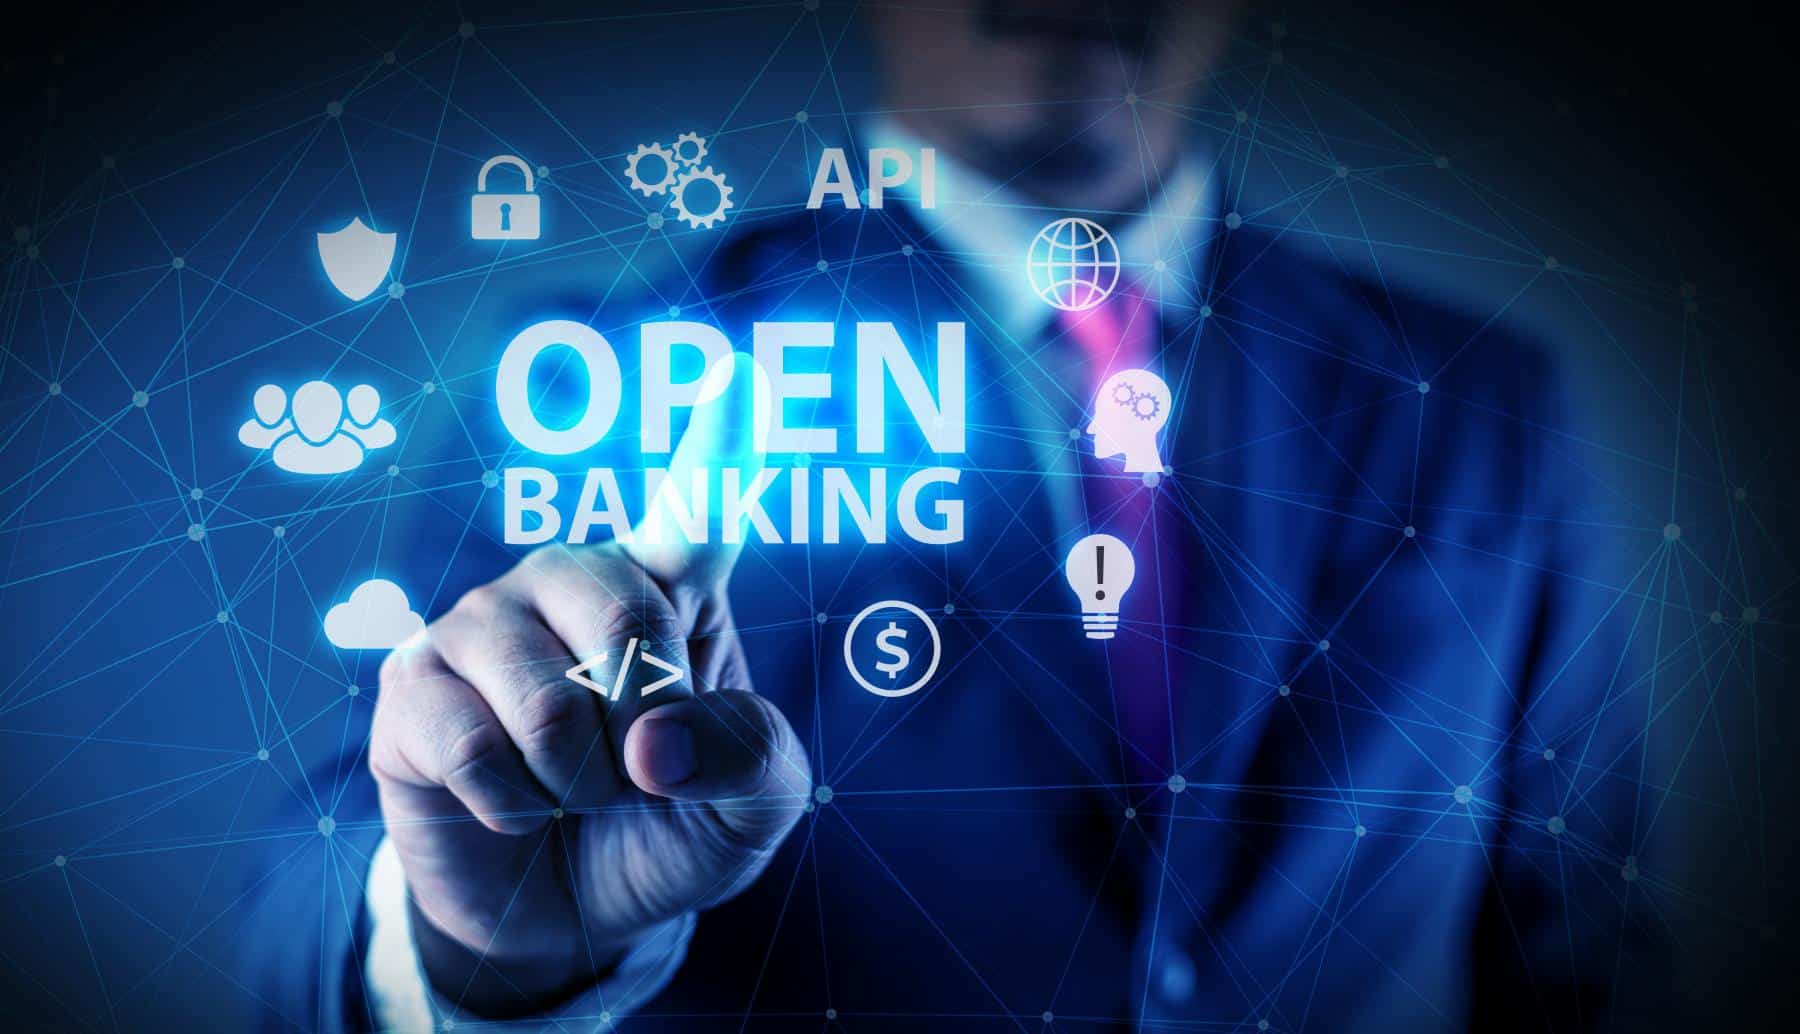 O que é Open Banking? Você já conhece o novo sistema bancário que promete revolucionar a indústria financeira? Saiba mais sobre o conceito e atuação no mercado brasileiro!